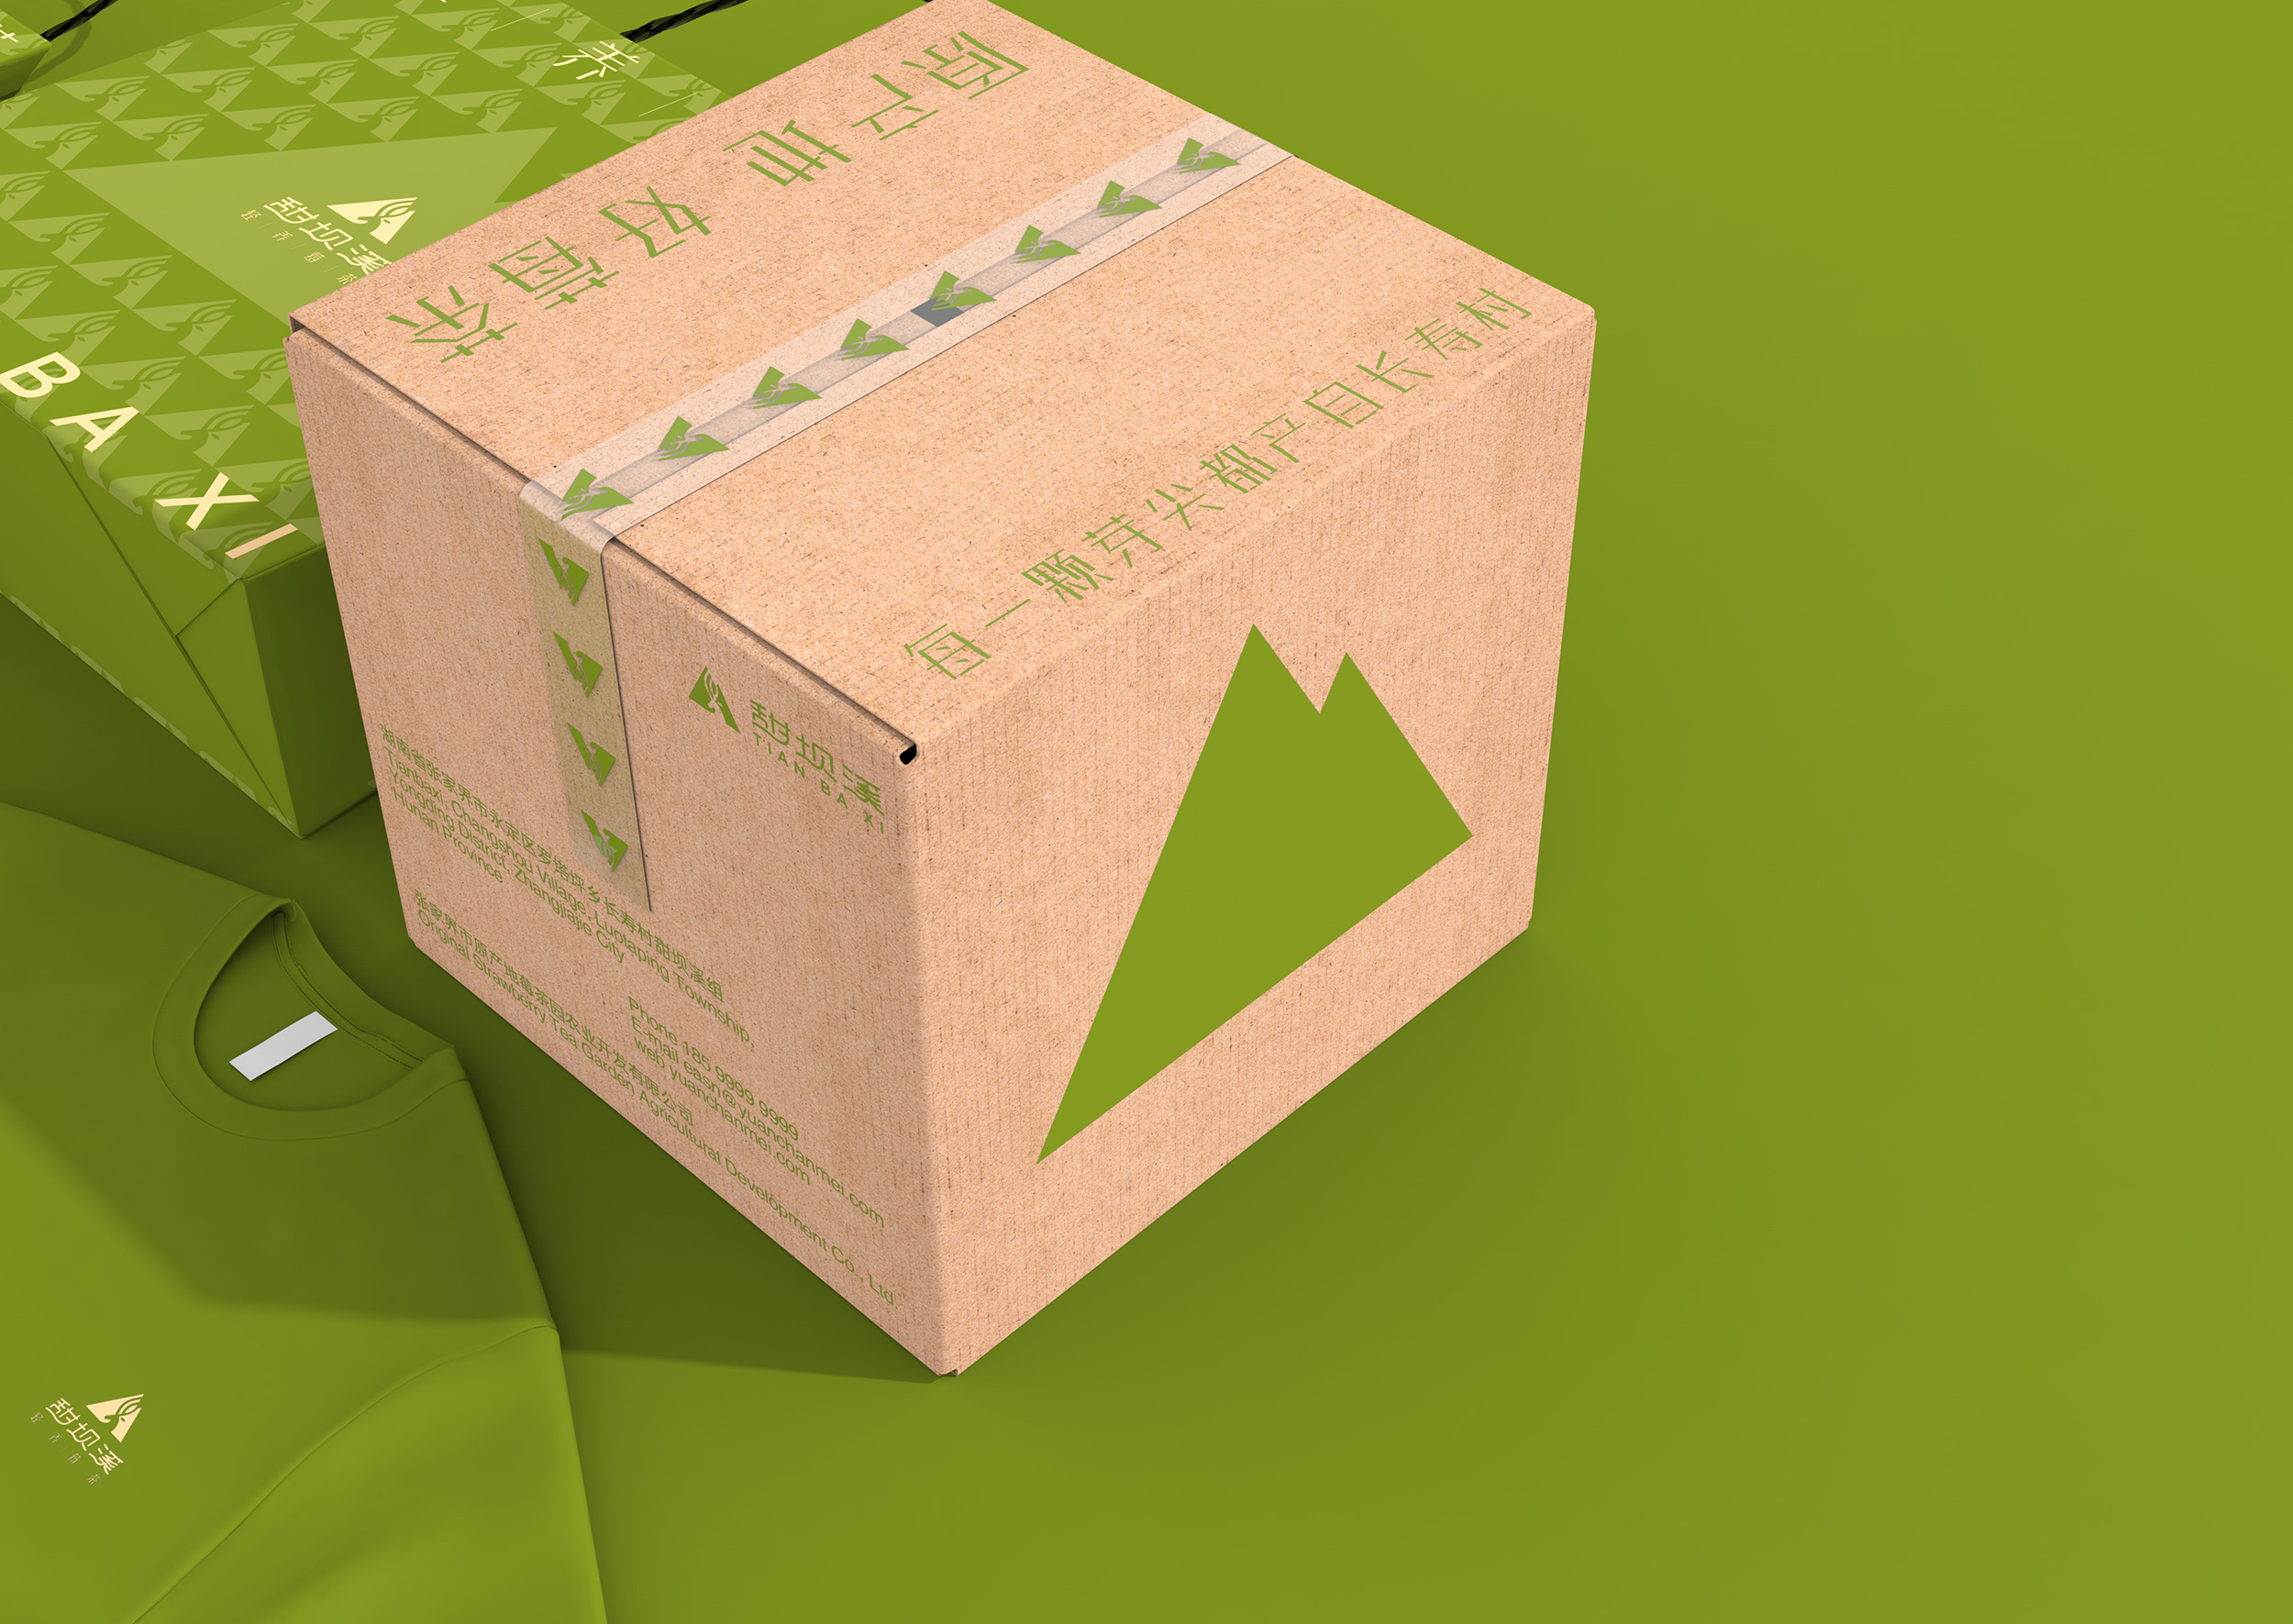 甜坝溪莓茶品牌包装设计